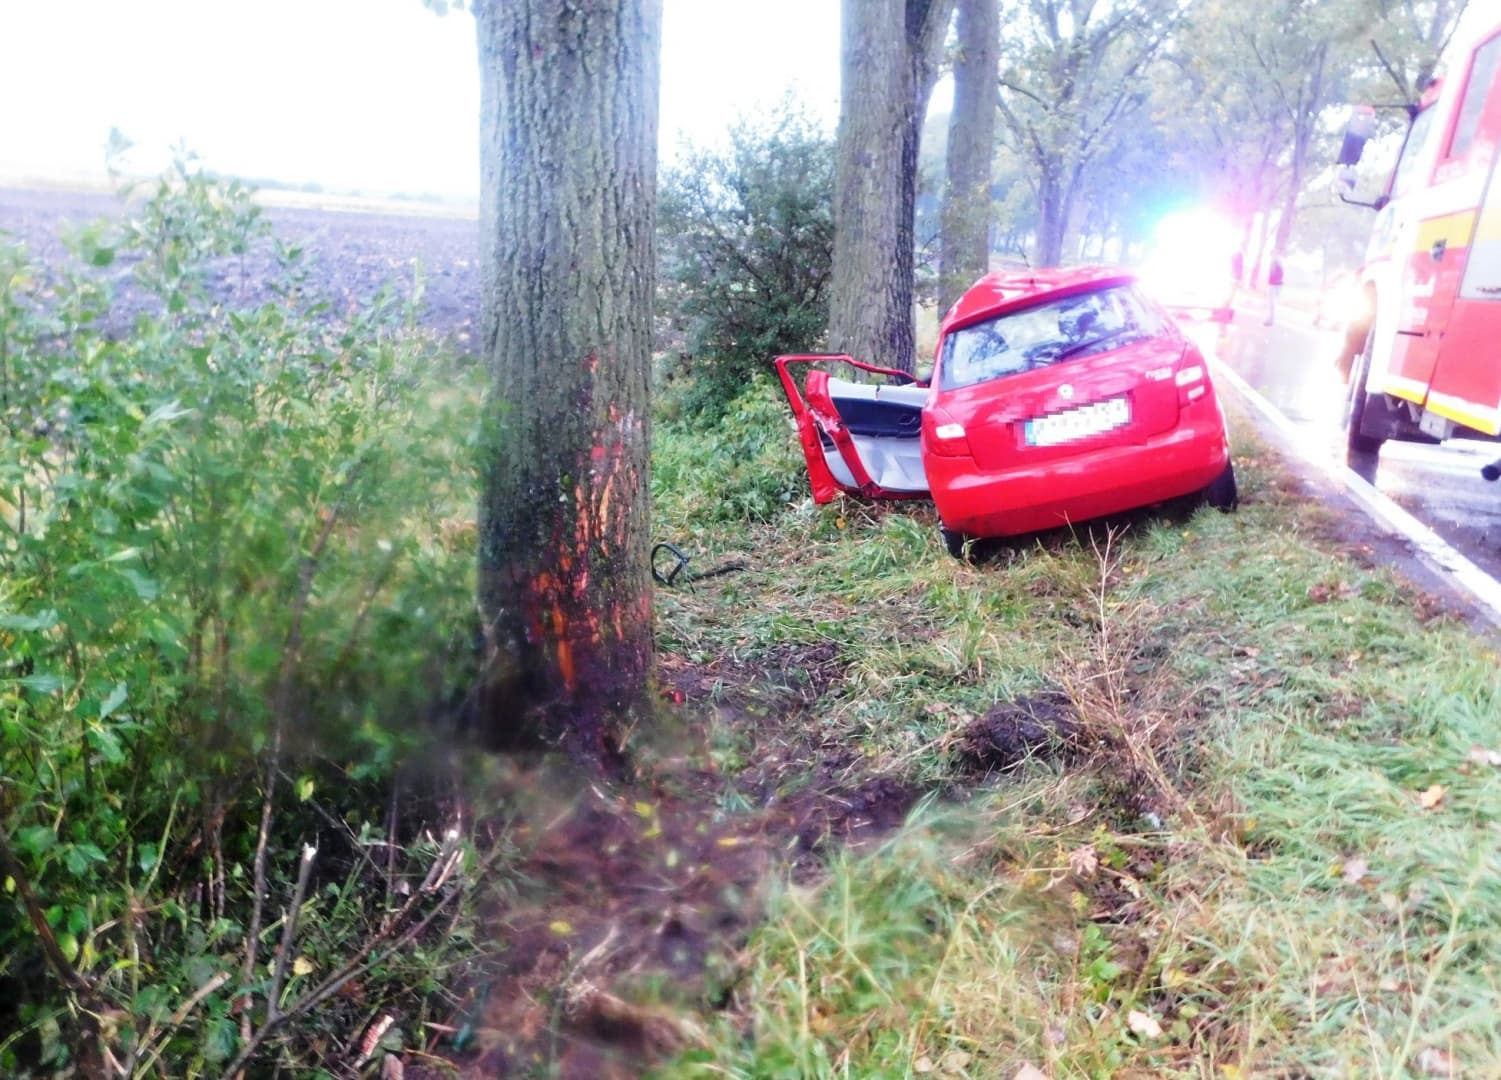 Fának rohant egy személykocsi – két fiatal súlyosan megsérült, a sofőr részeg volt